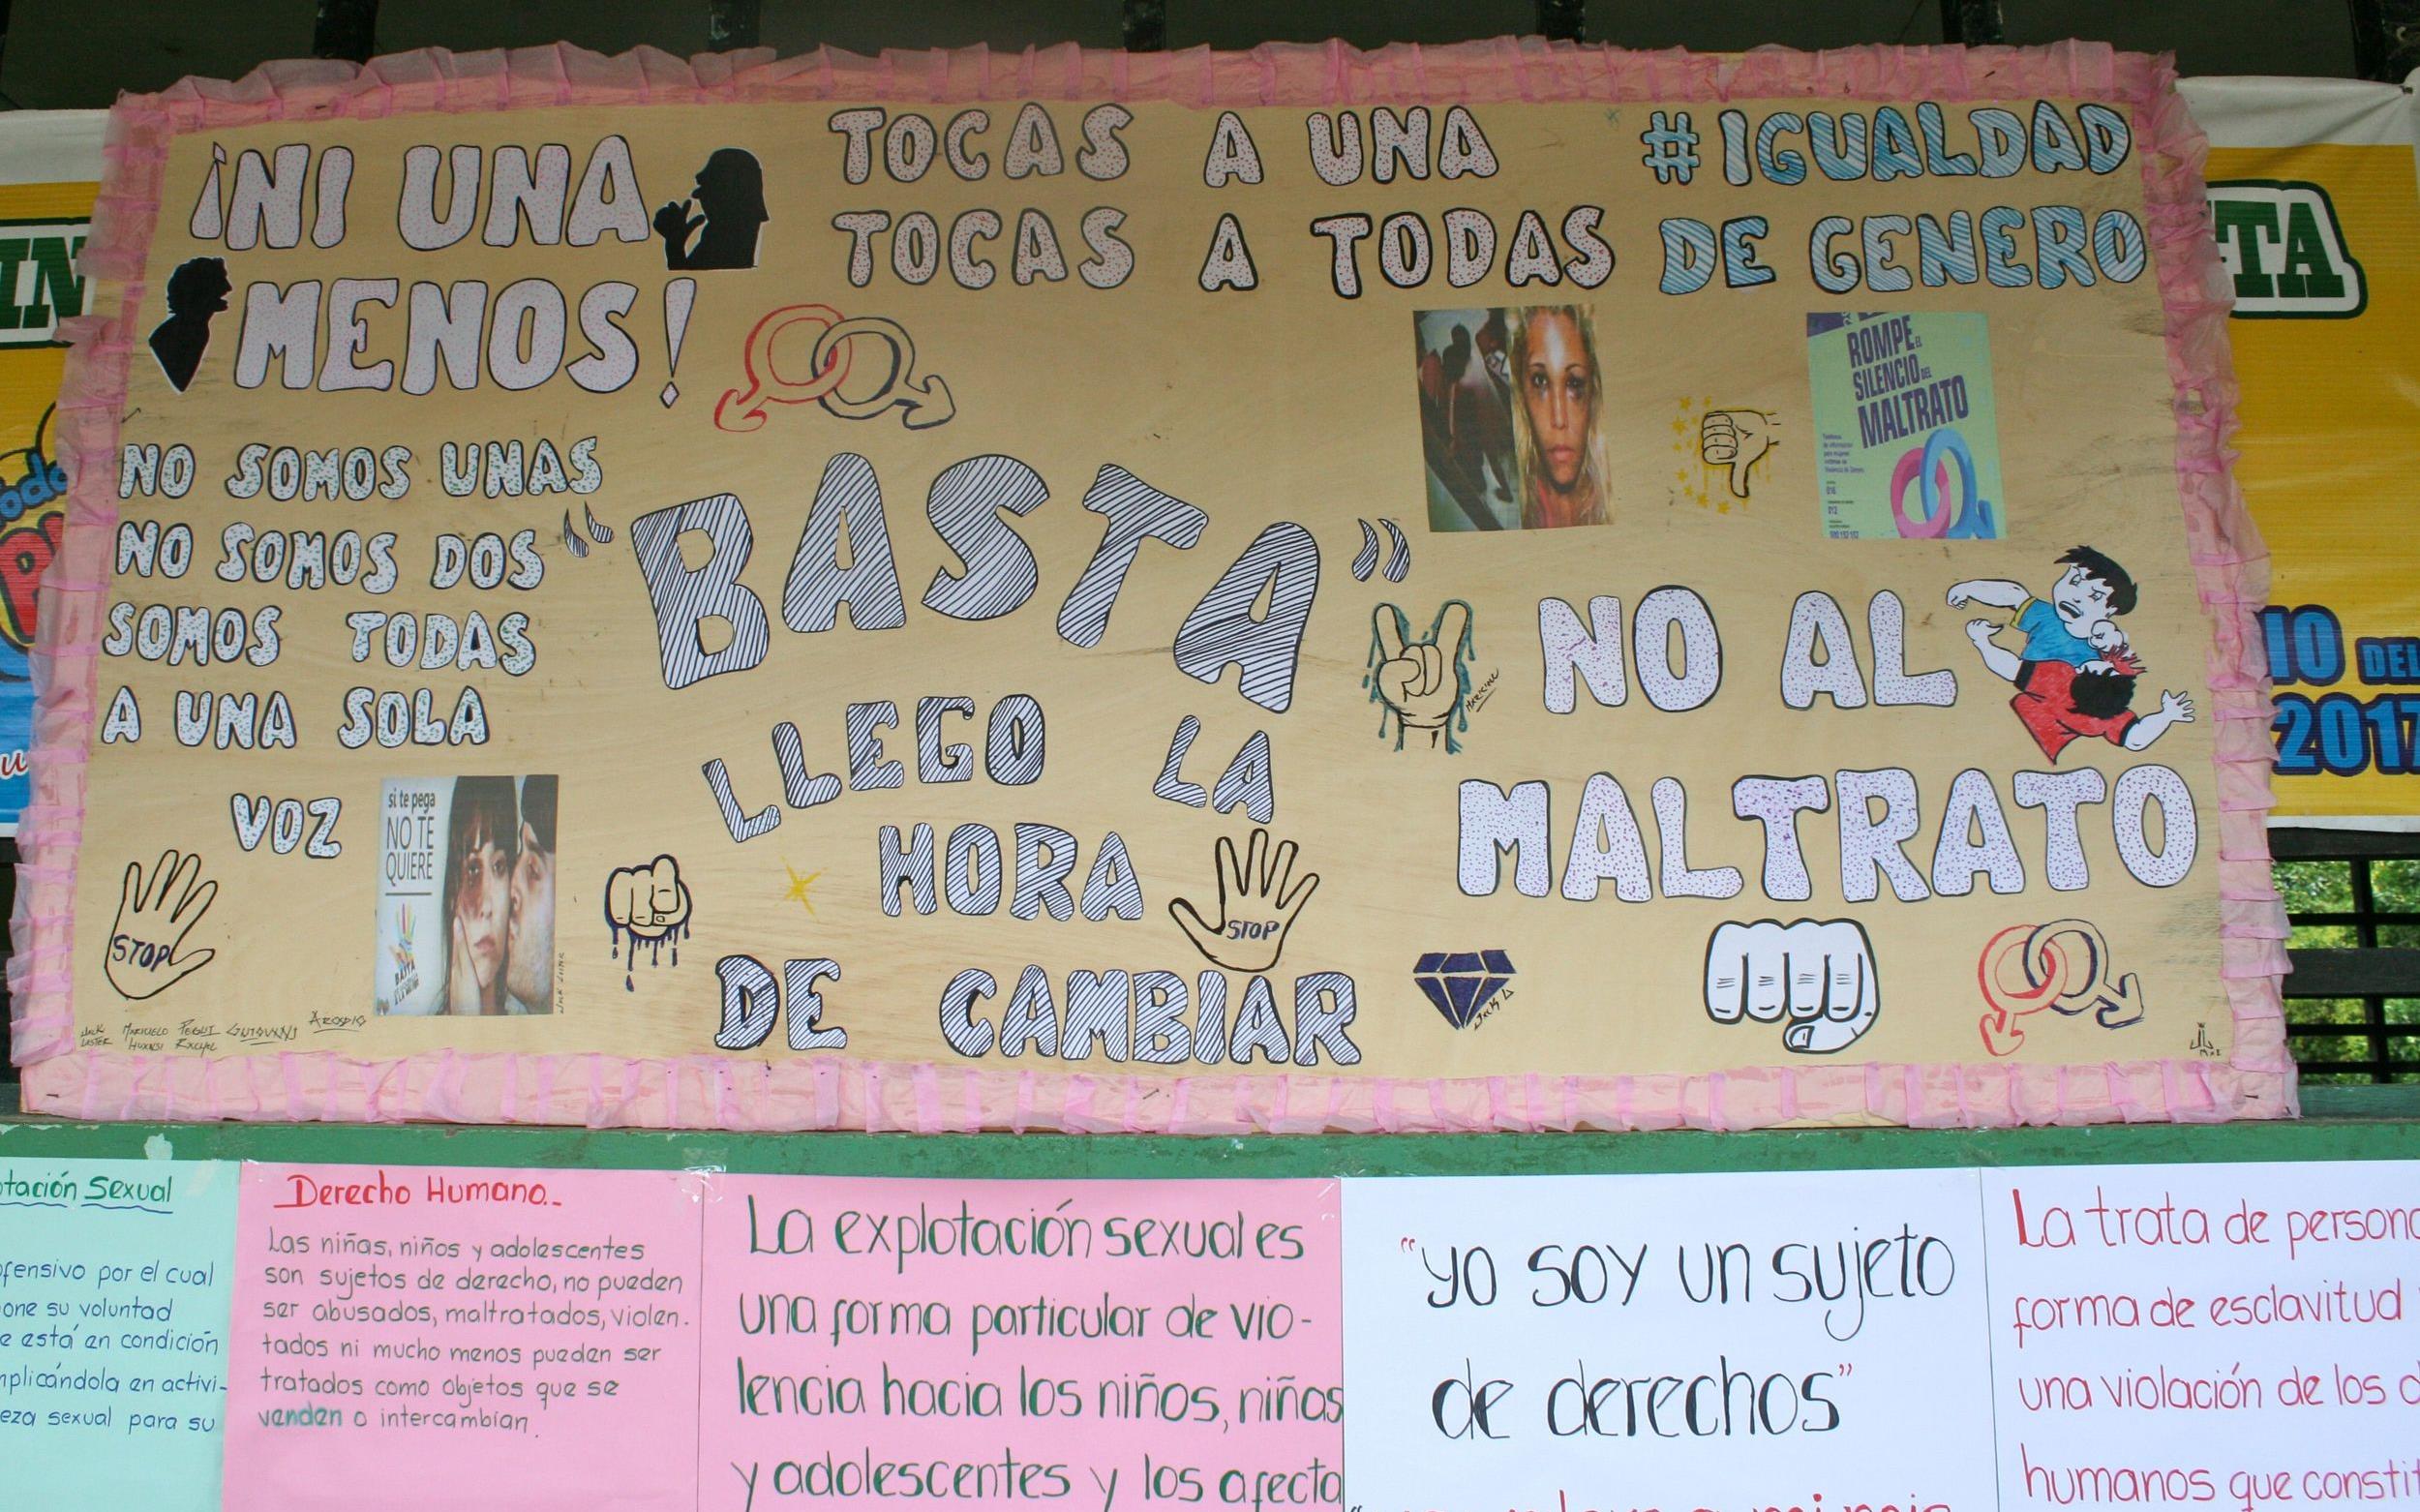 Reportage "Kinderhandel in Peru: Gemeinsam gegen Trata"; Foto: Von Kindern gemaltes Plakat gegen Missbrauch (Quelle: Jürgen Schübelin / Kindernothilfe)